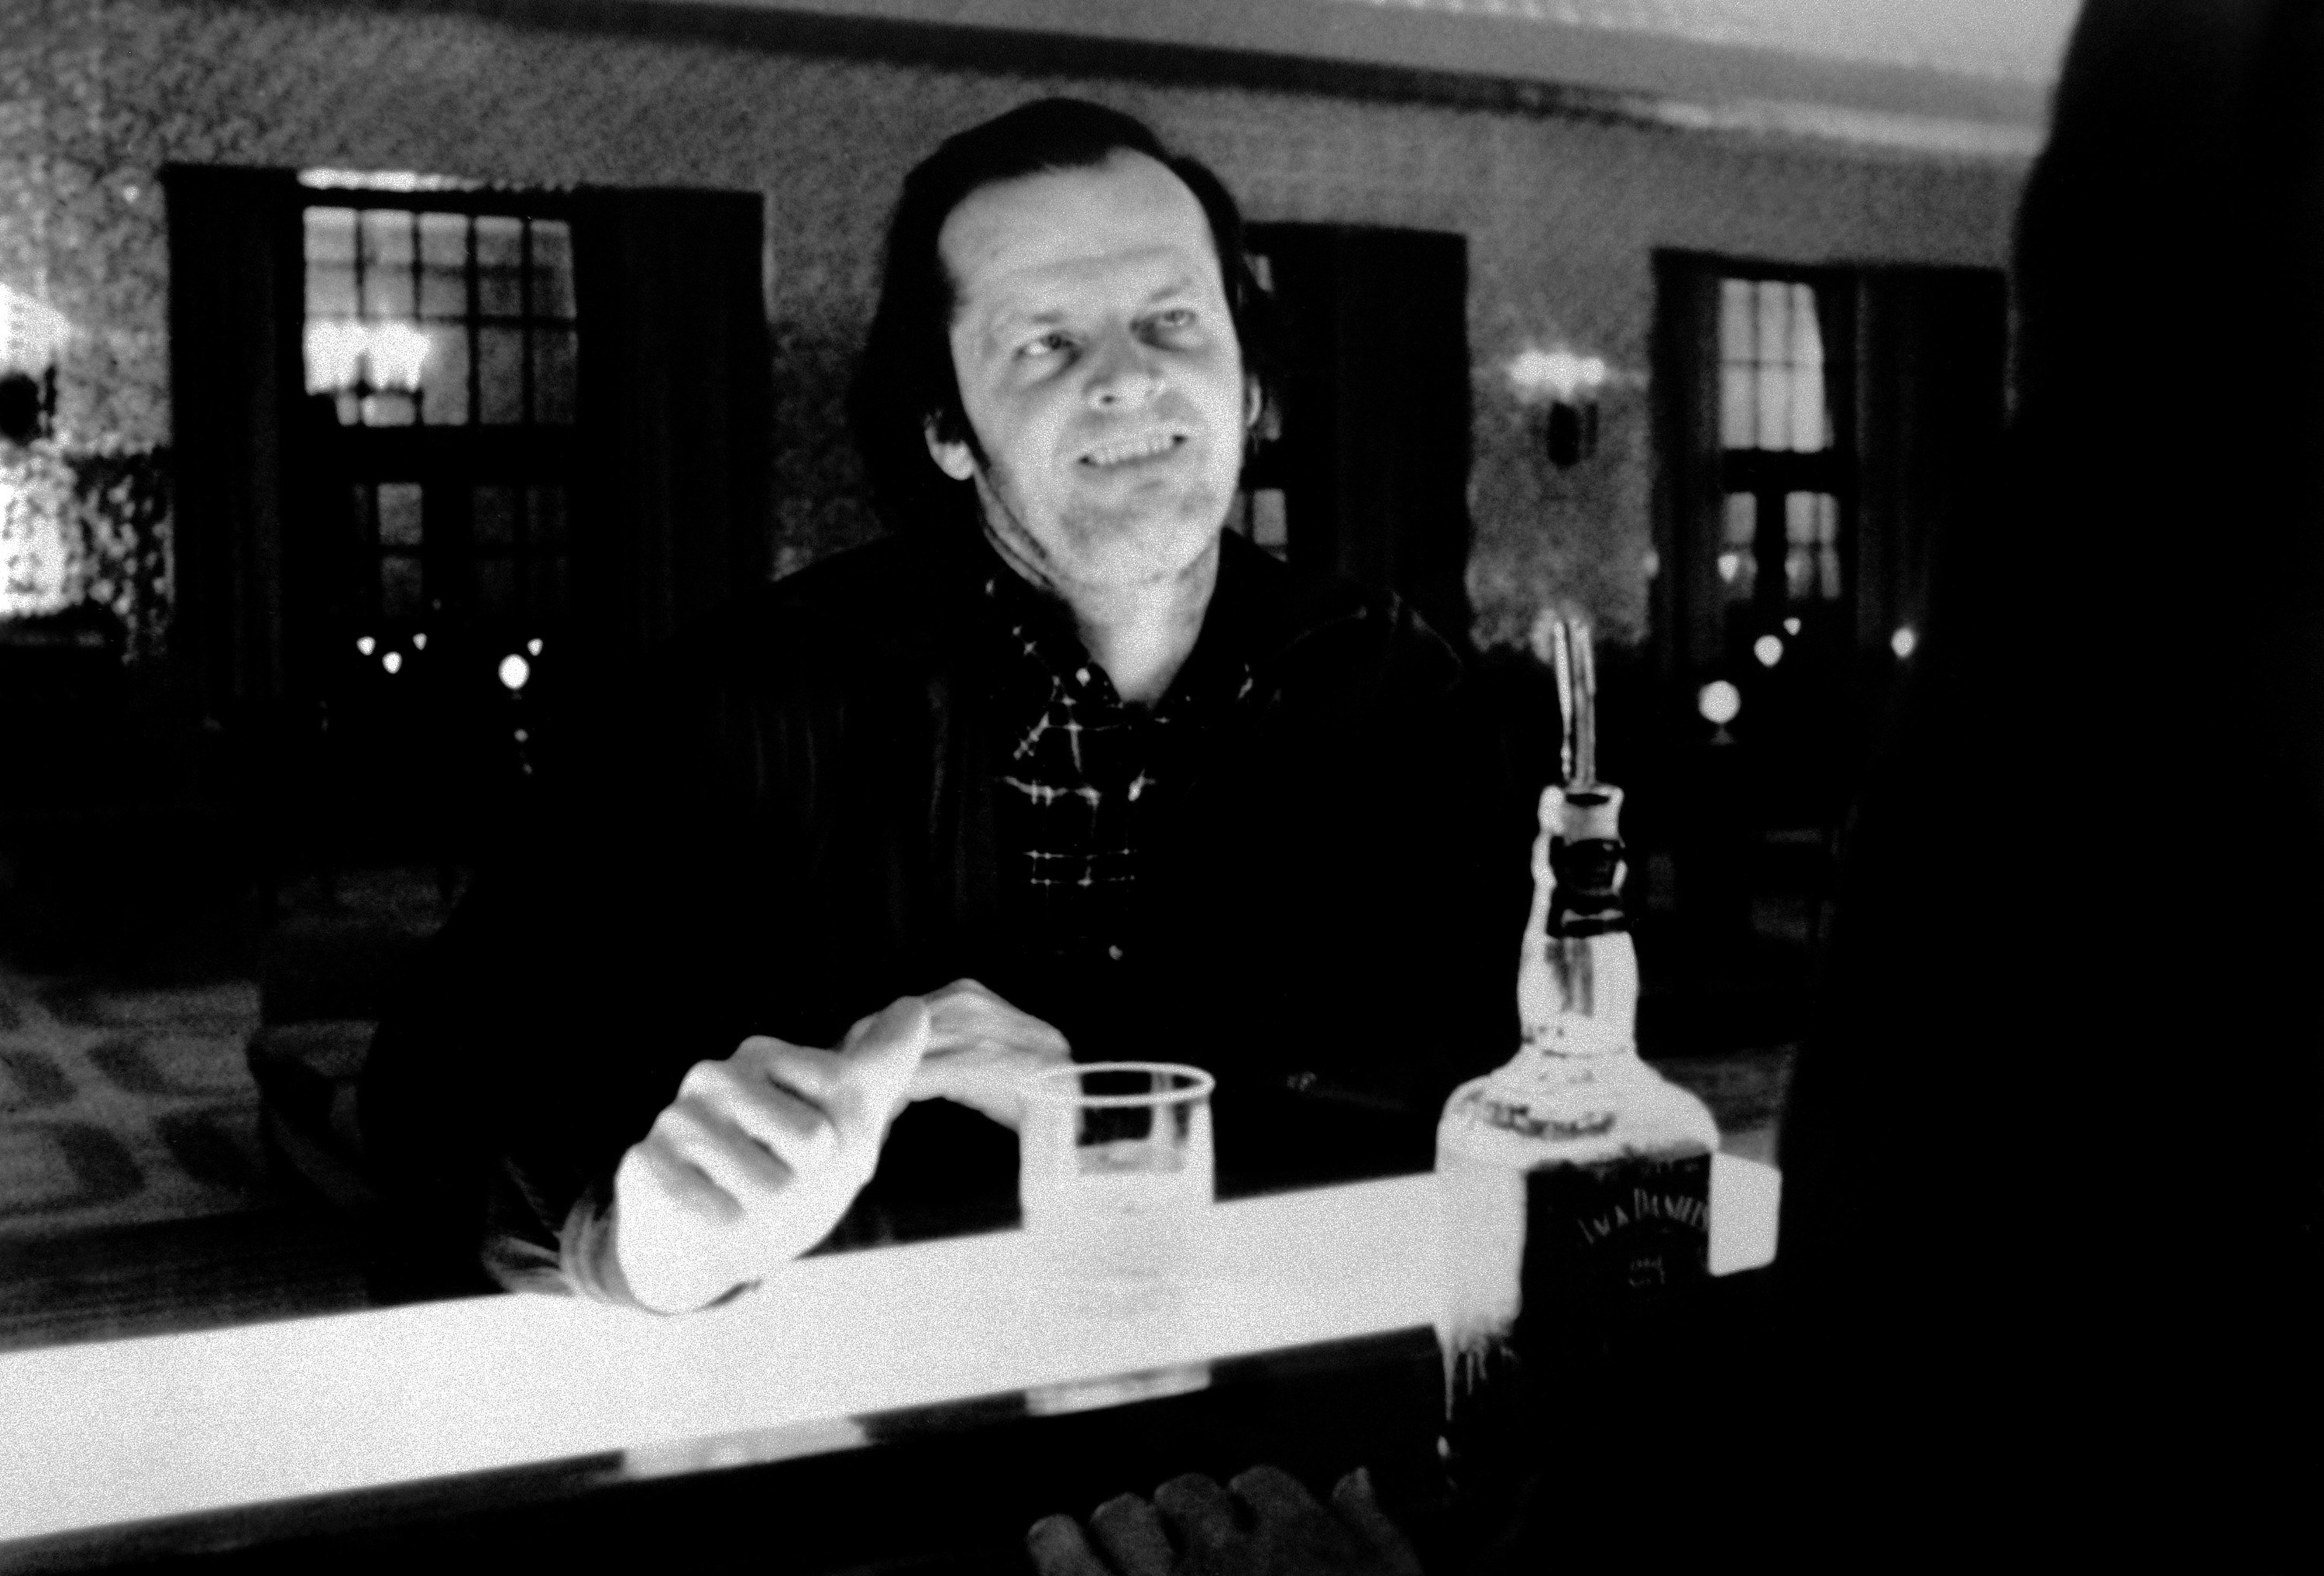 Jack Nicholson sitting at a bar